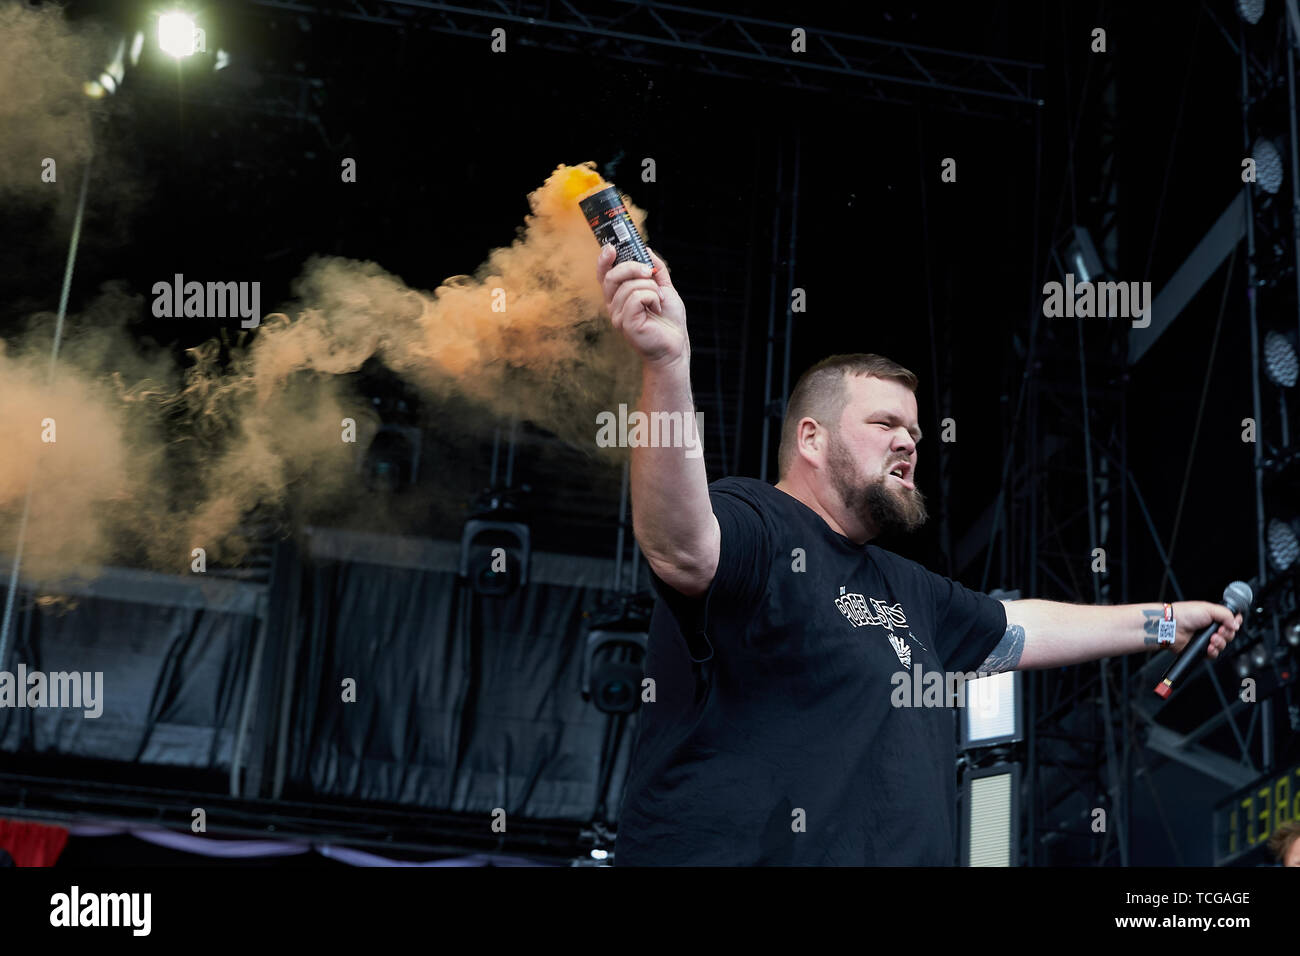 08 June 2019, Rhineland-Palatinate, Nürburg: Frontman Jan "Monchi" Gorkow  ignites pyrotechnics with his band "Feine